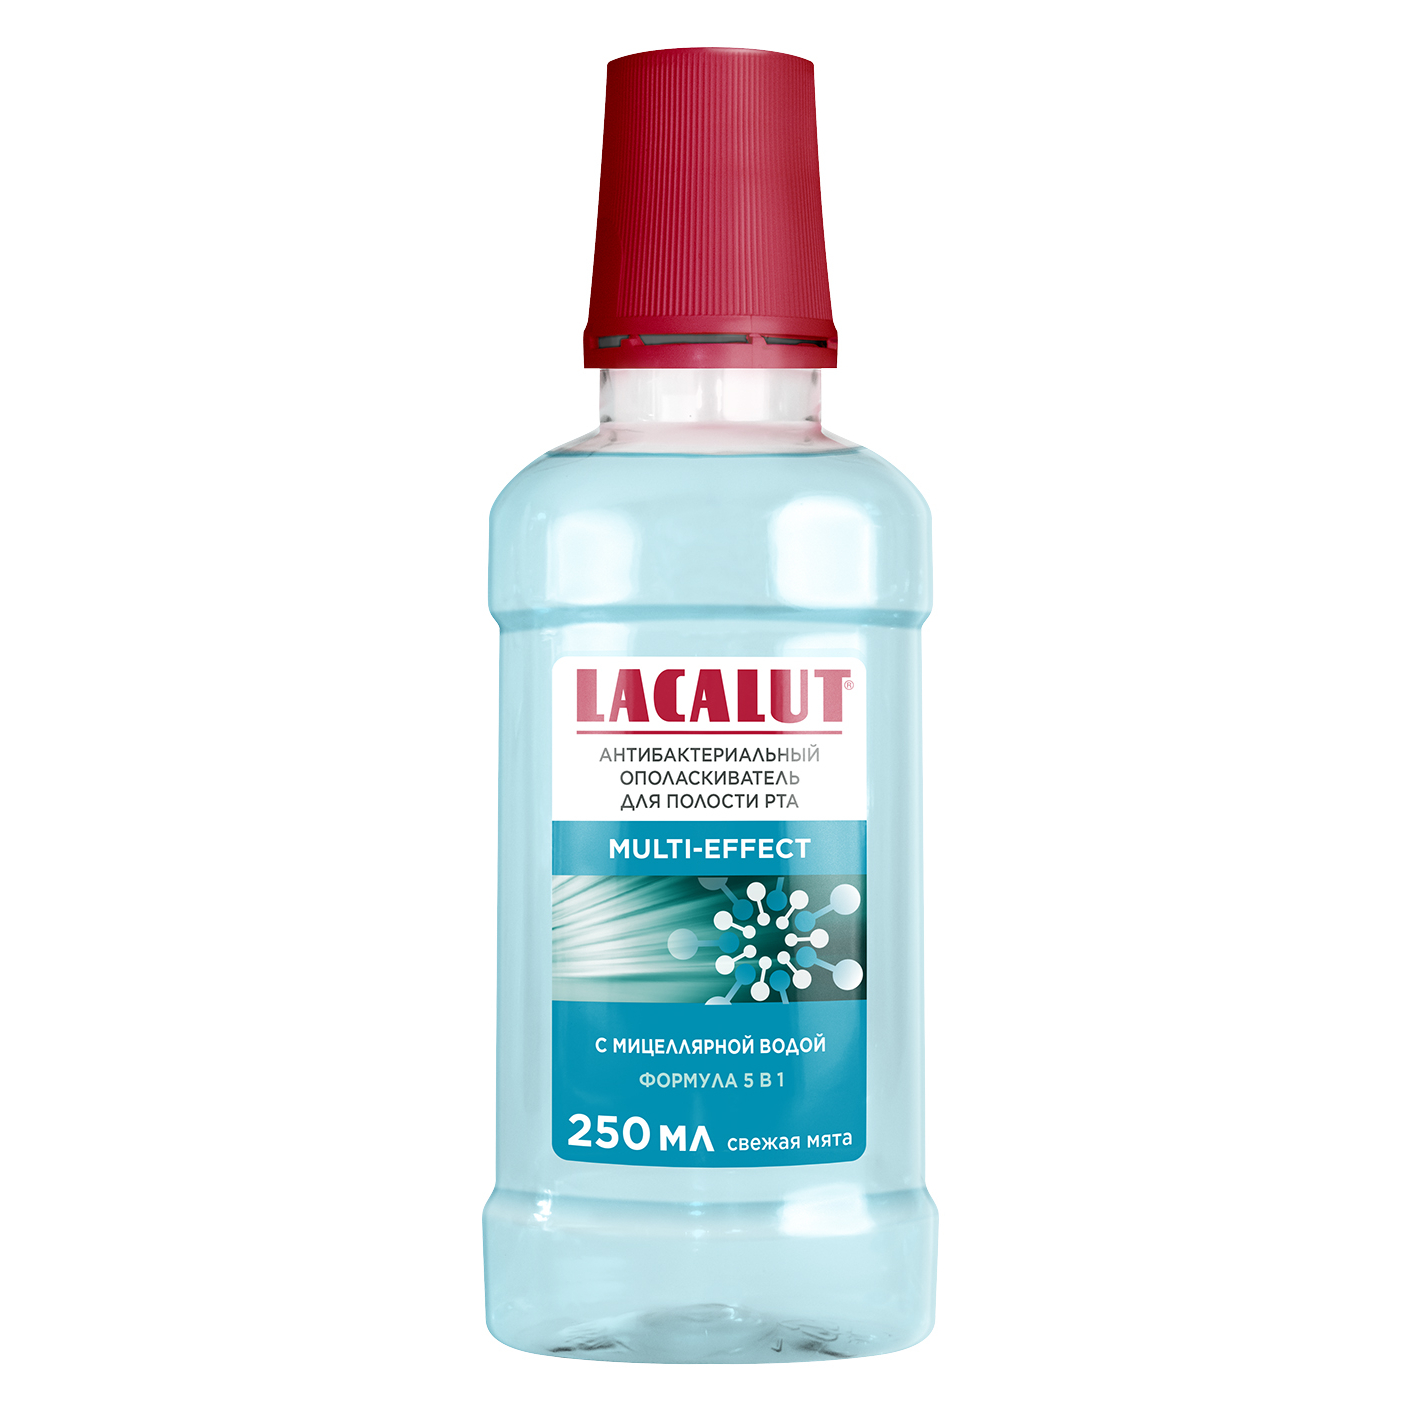 Ополаскиватель для полости рта Lacalut multi-effect антибактериальный 250 мл ополаскиватель для полости рта lacalut sensitive 500 мл антибактериальный